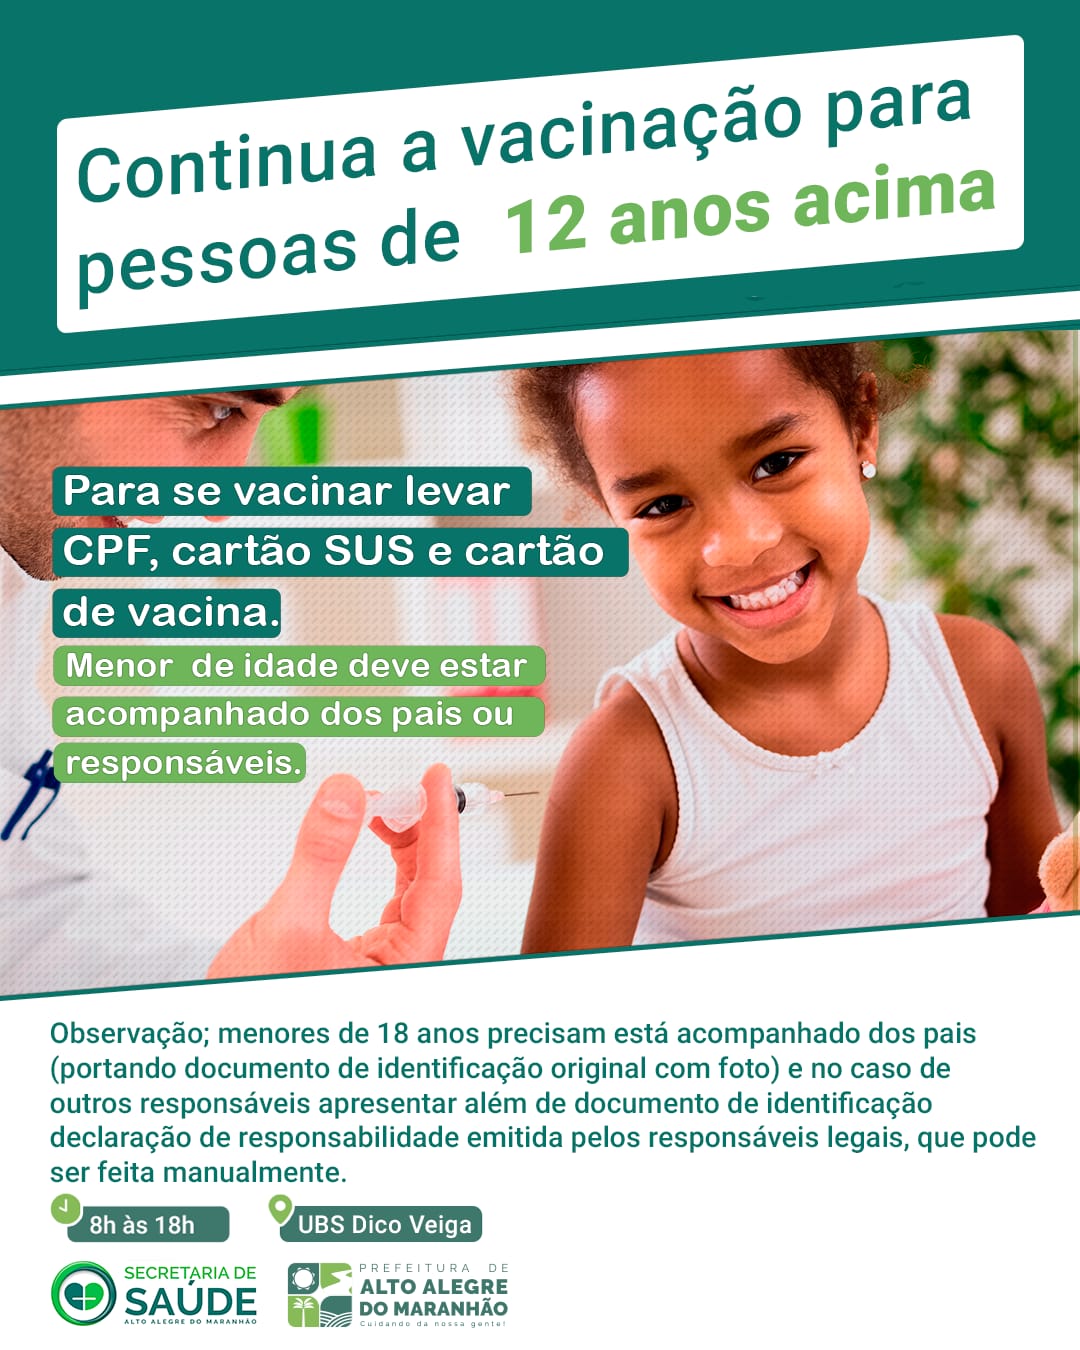 Em Alto Alegre do Maranhão, continua a vacinação contra COVID-19 para pessoas de 12 anos no Posto de Saúde da Dico Veiga.